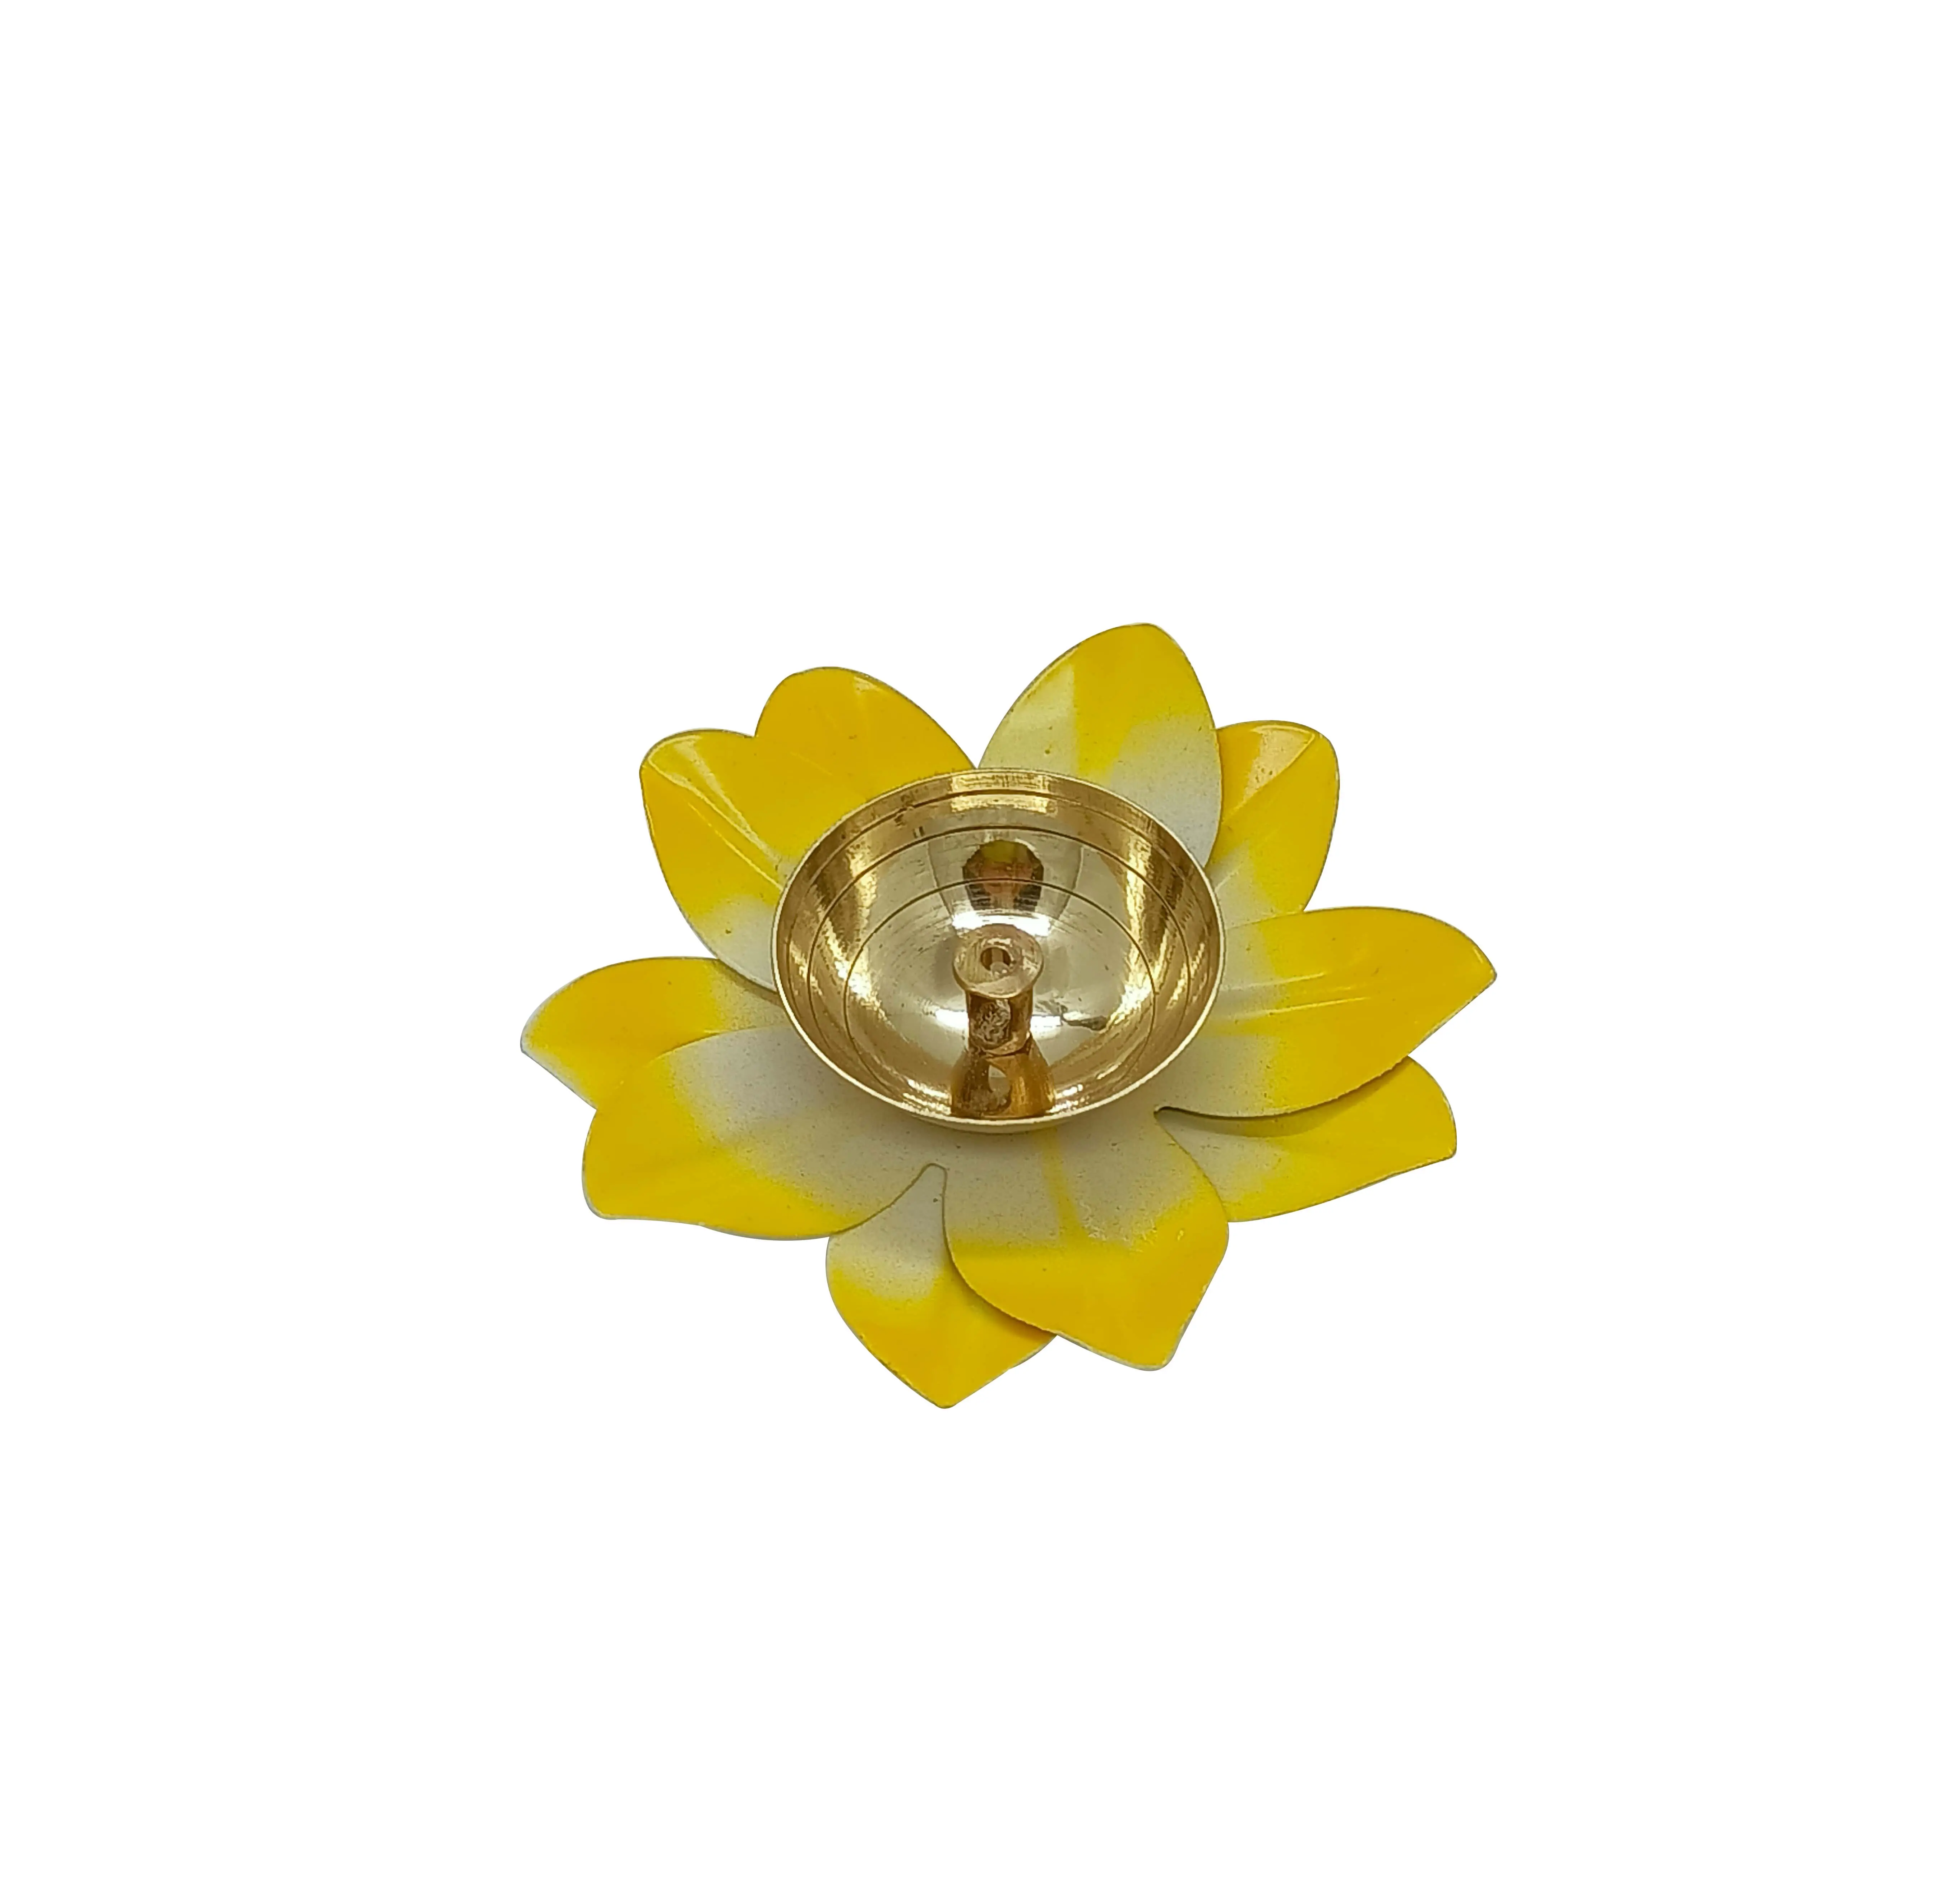 Diya-Diya de Metal amarillo pequeño, 4 pulgadas de diámetro, precio de robo por borde Medieval, compra el último diseño, 2021